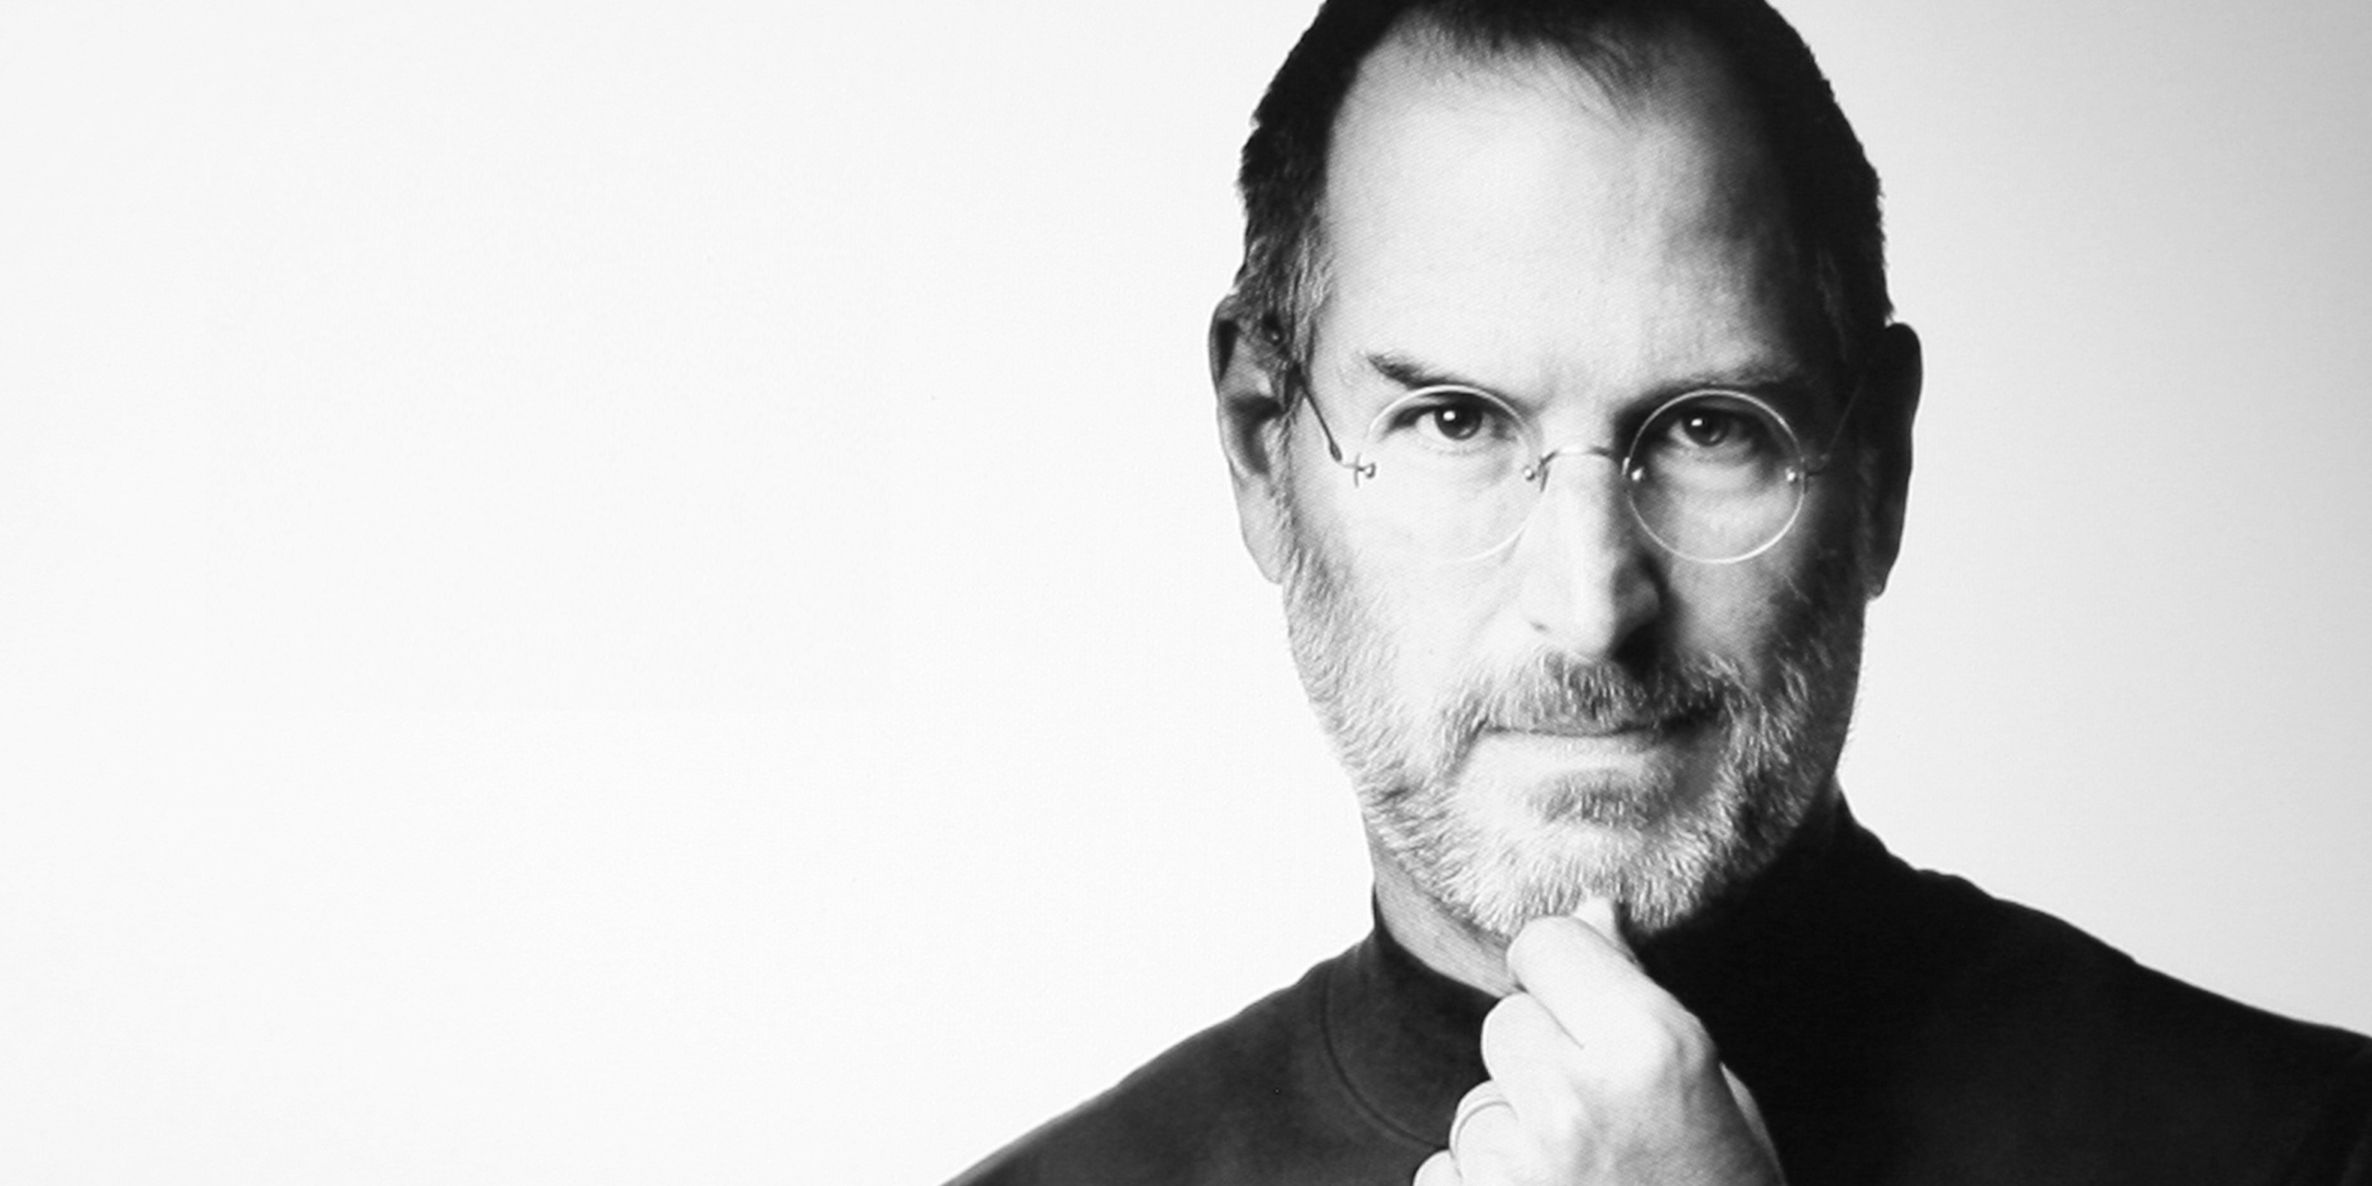 Le ultime parole di Steve Jobs sono una bufala?